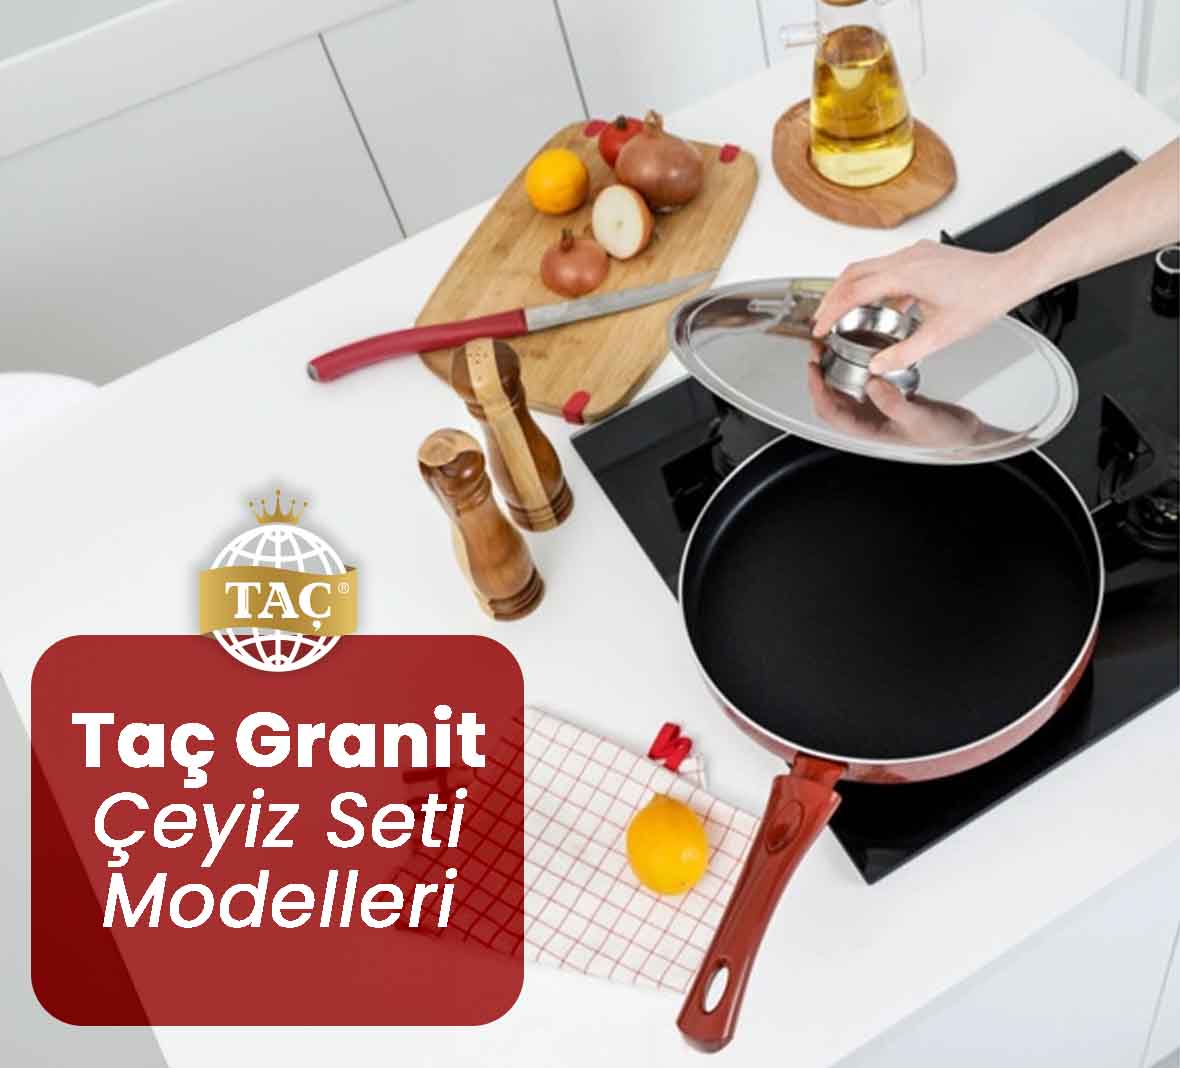 Taç Granit Çeyiz Seti Modelleri Fiyatları ve Satışları hakkında daha fazla bilgi için bizimle iletişime geçin. - Tacev.com